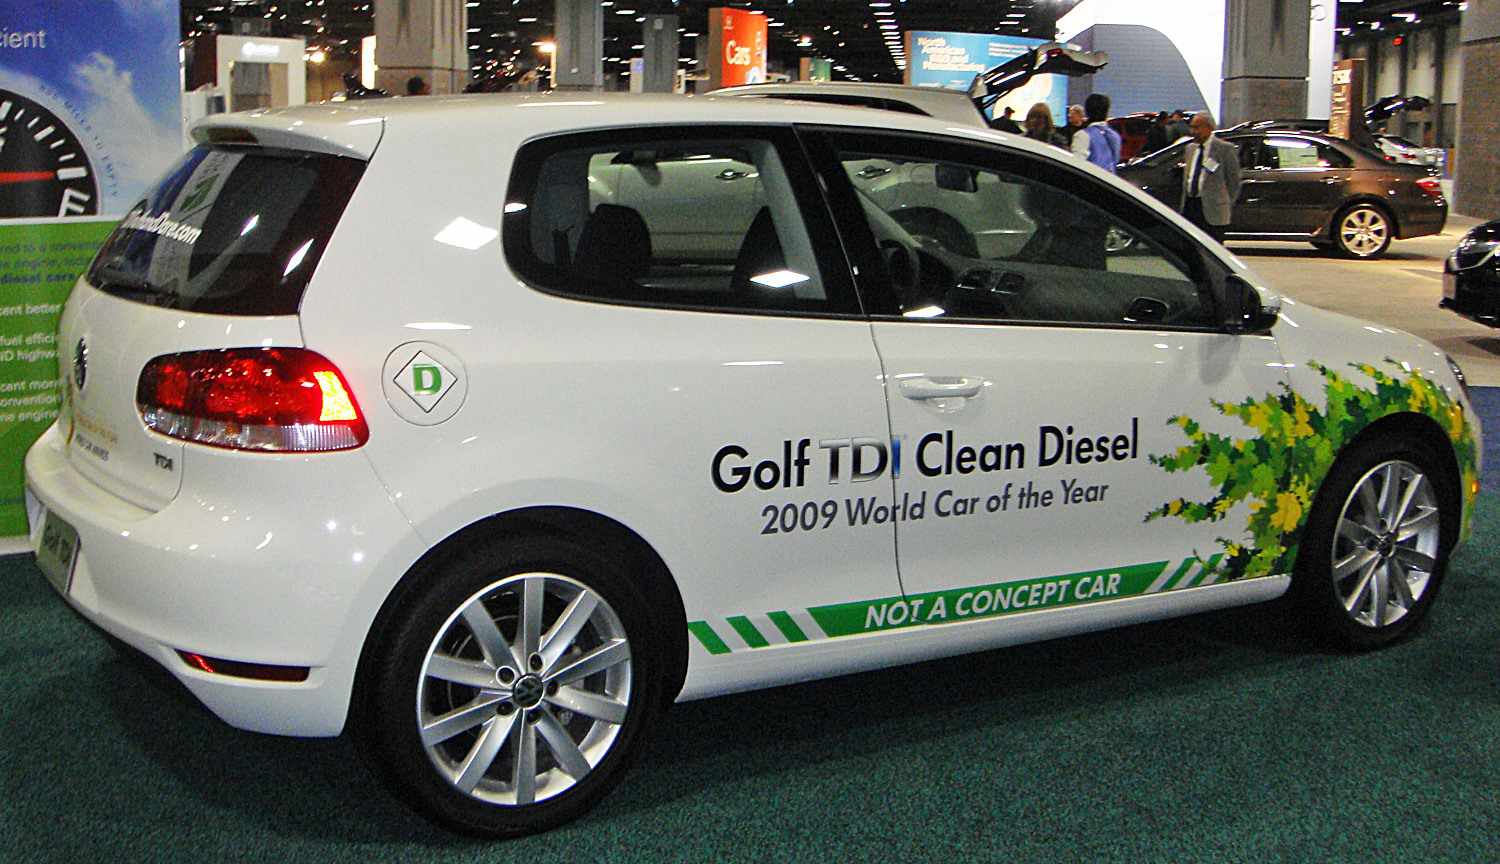 大众的高尔夫TDI是2009年的年度绿色汽车